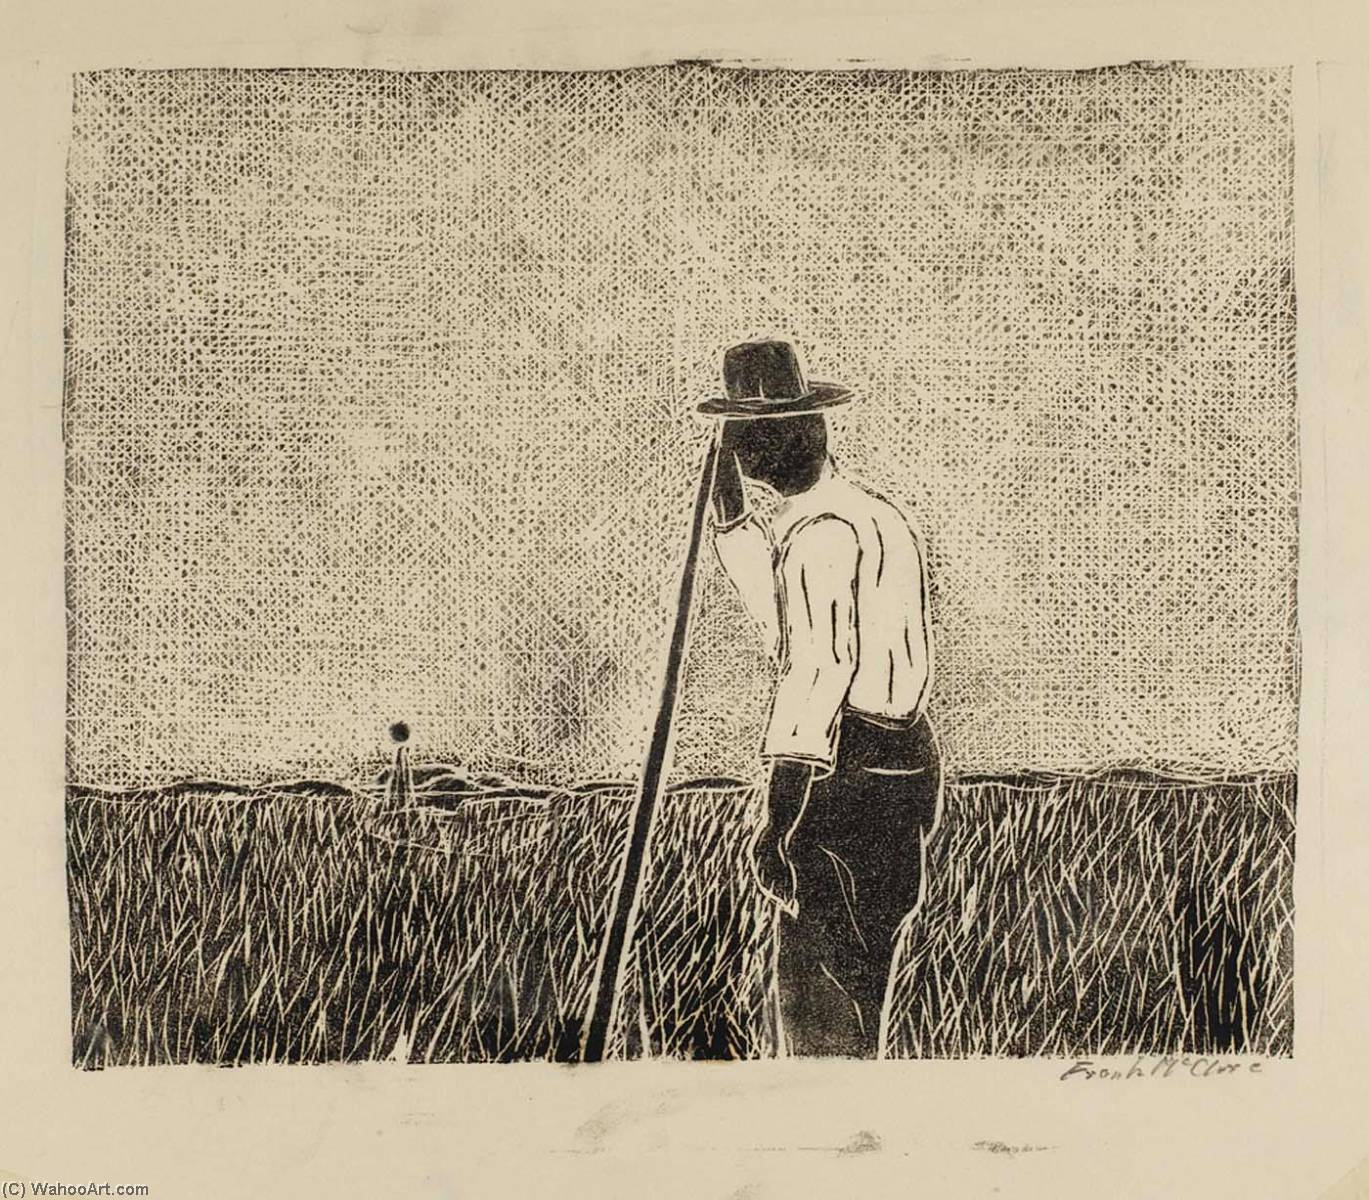 WikiOO.org - Encyclopedia of Fine Arts - Lukisan, Artwork Frank Mcclure - Farmer Leaning on Staff in Field